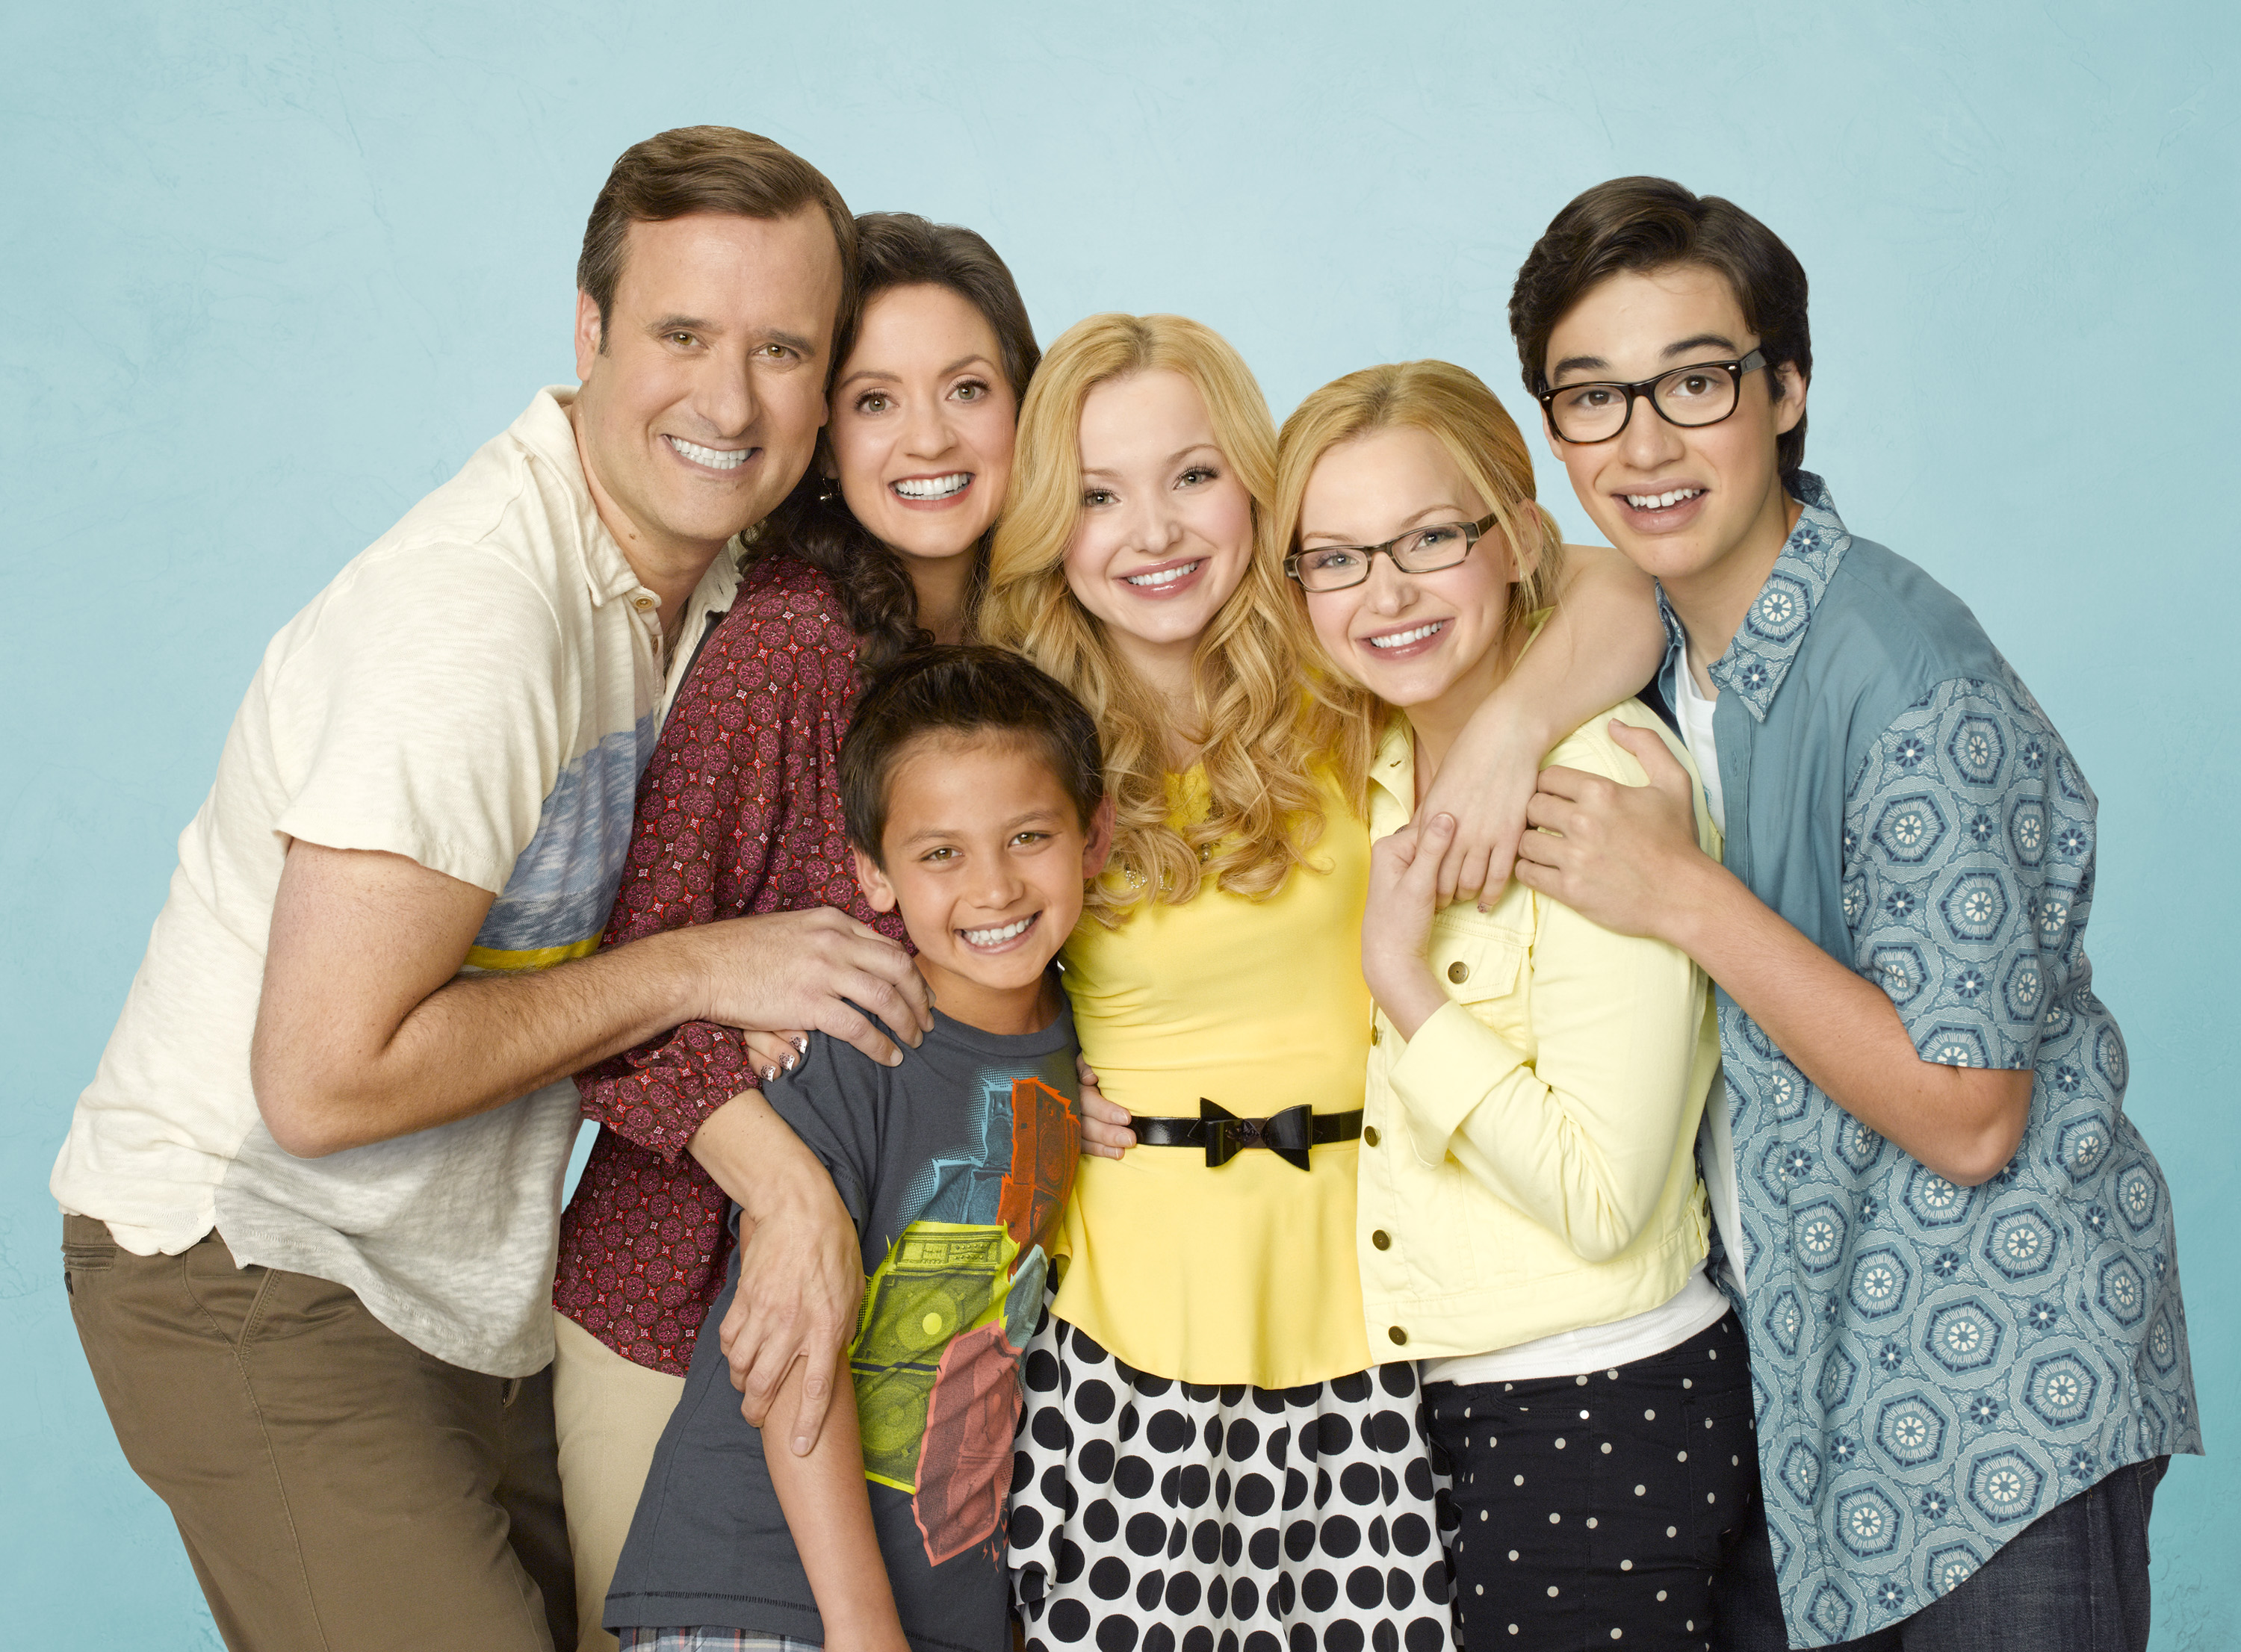 Un nou serial de comedie, "Liv si Maddie", are premiera sambata, 25 ianuarie, la Disney Channel